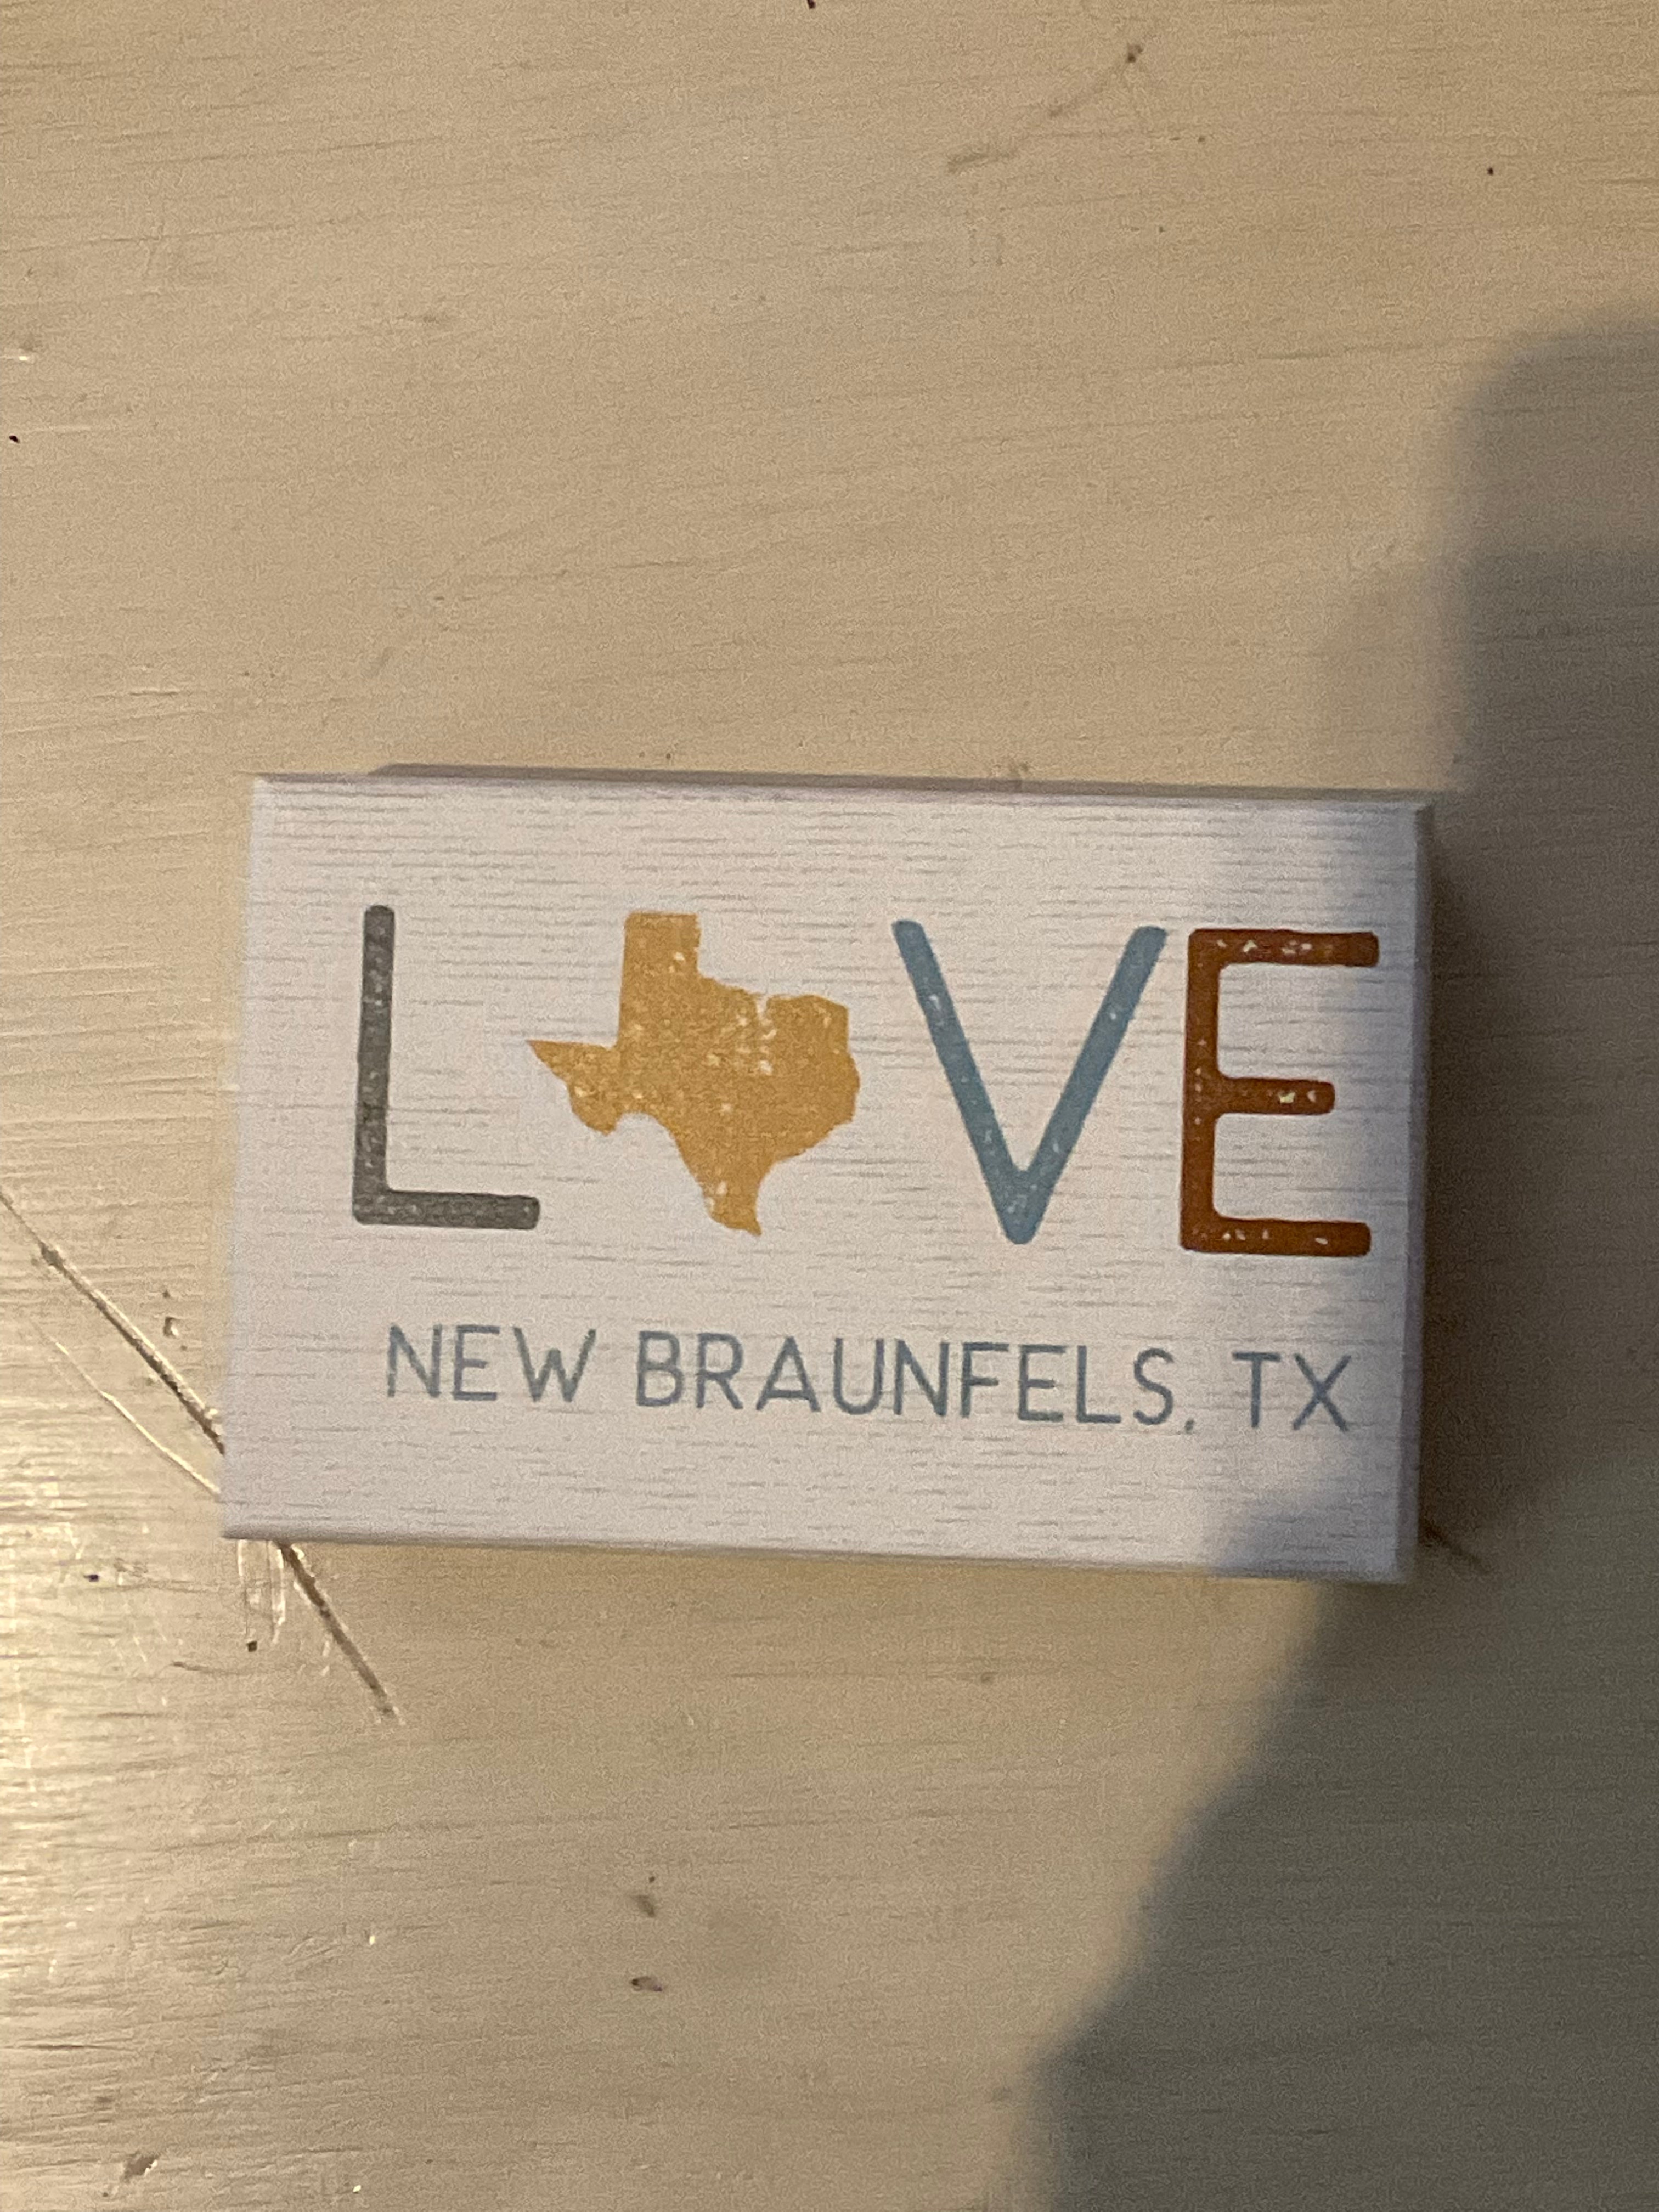 Love New Braunfels, TX